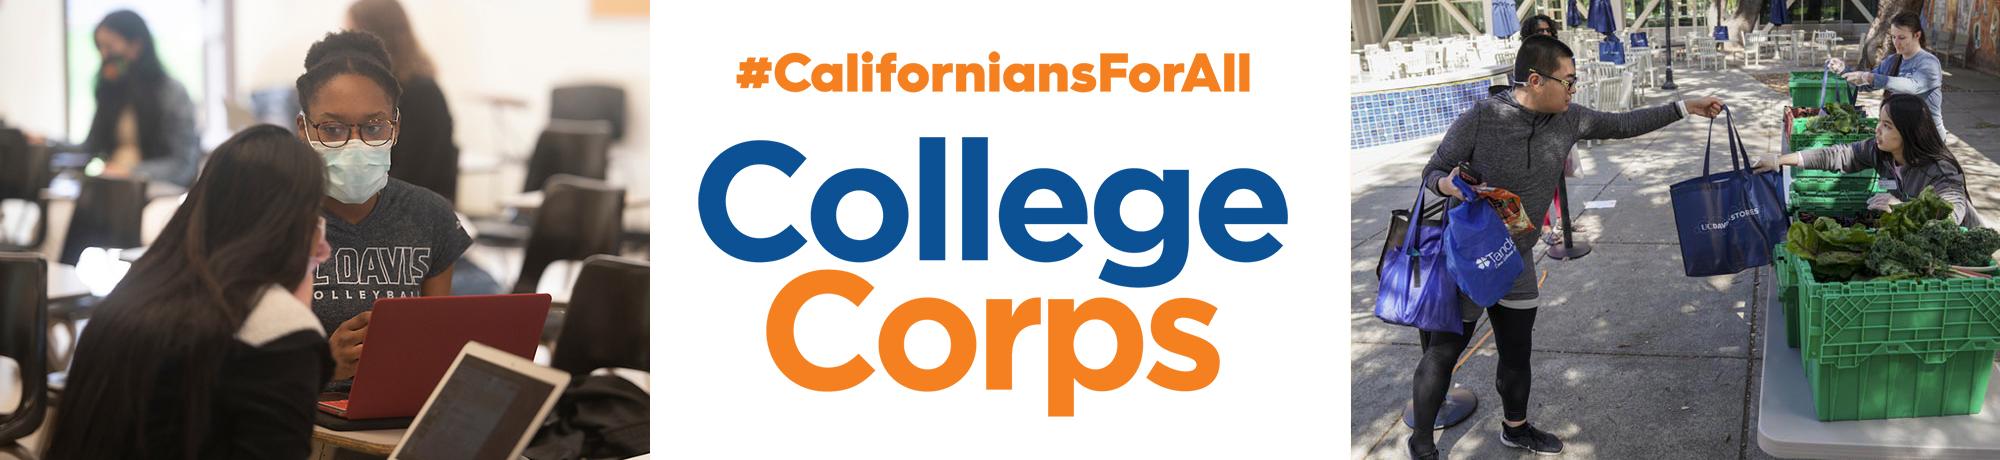 #CaliforniansForAll Sacramento Valley CollegeCorps banner logo